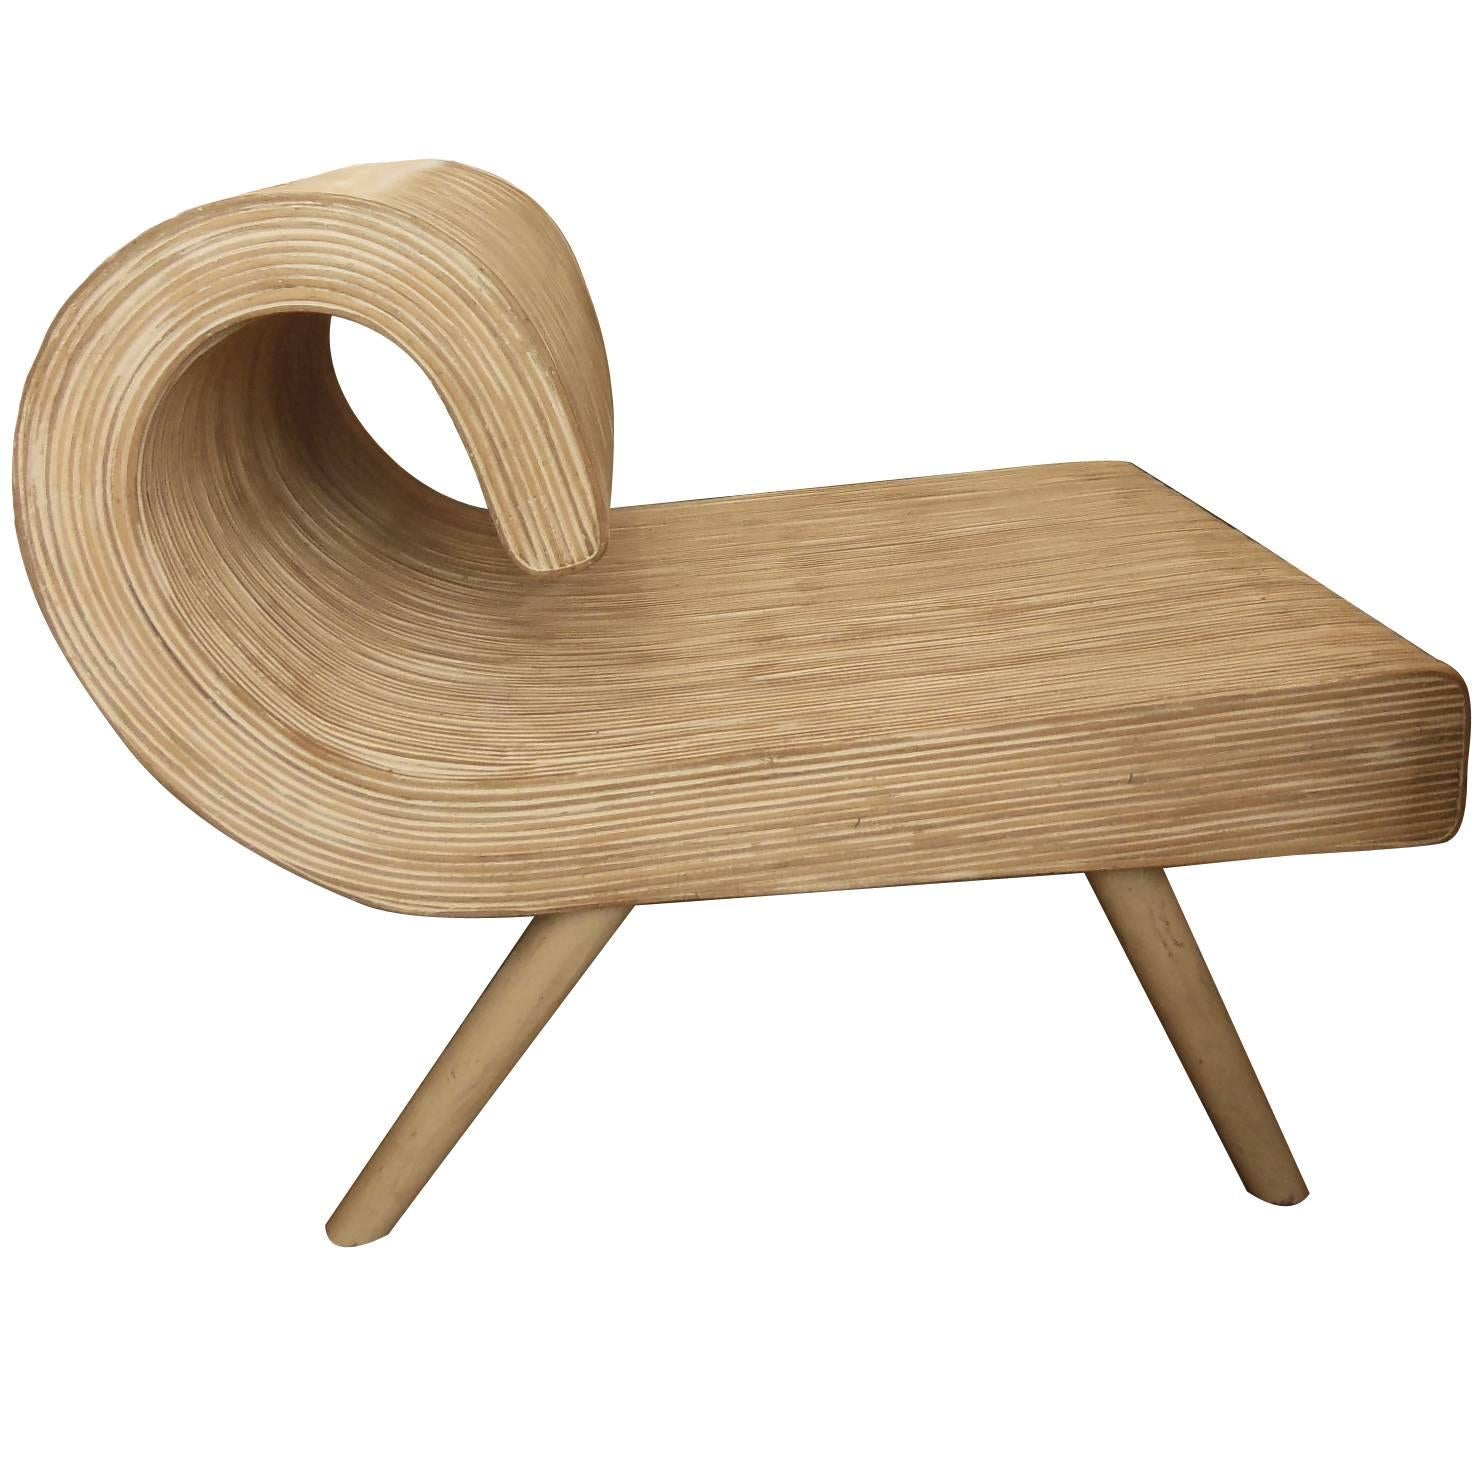 Fun Vintage Strip Bamboo Chair